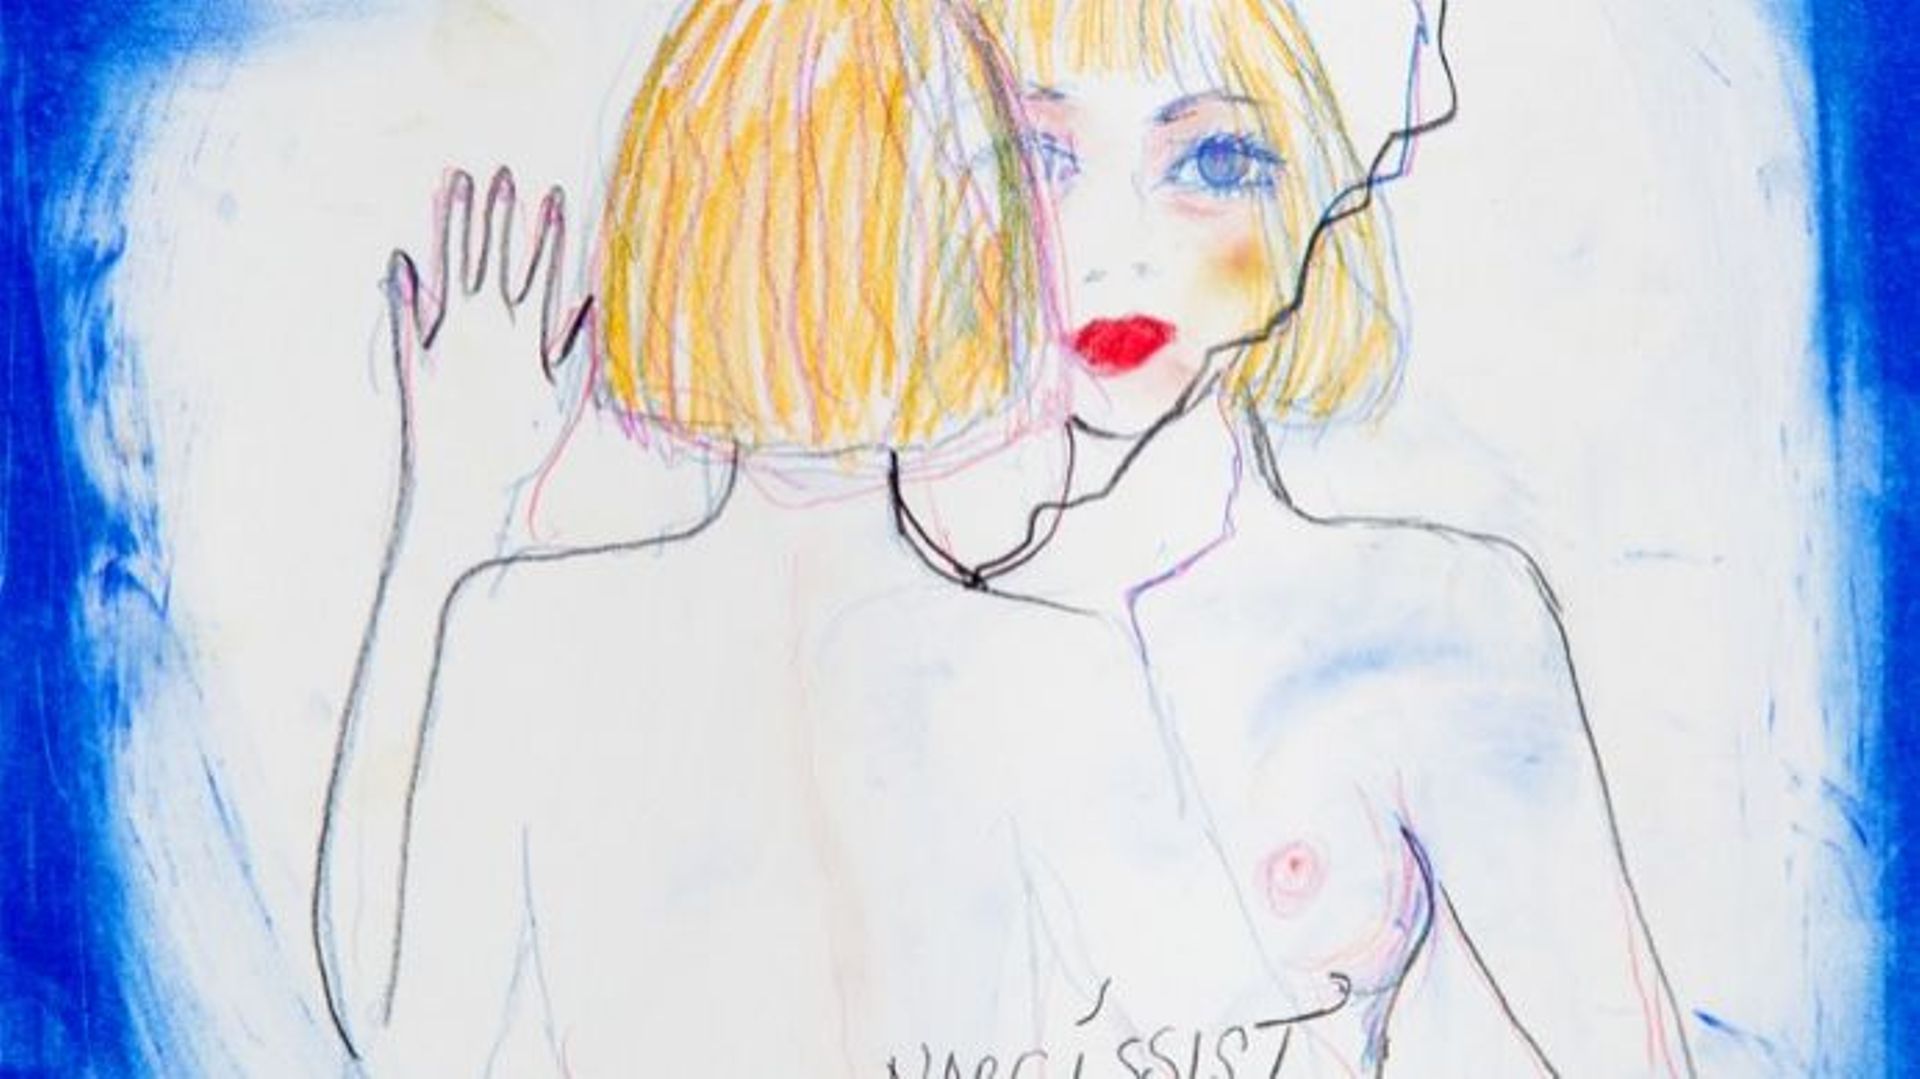 "Miss Narcissist", le nouveau titre de Courtney Love a été publié sur Soundcloud